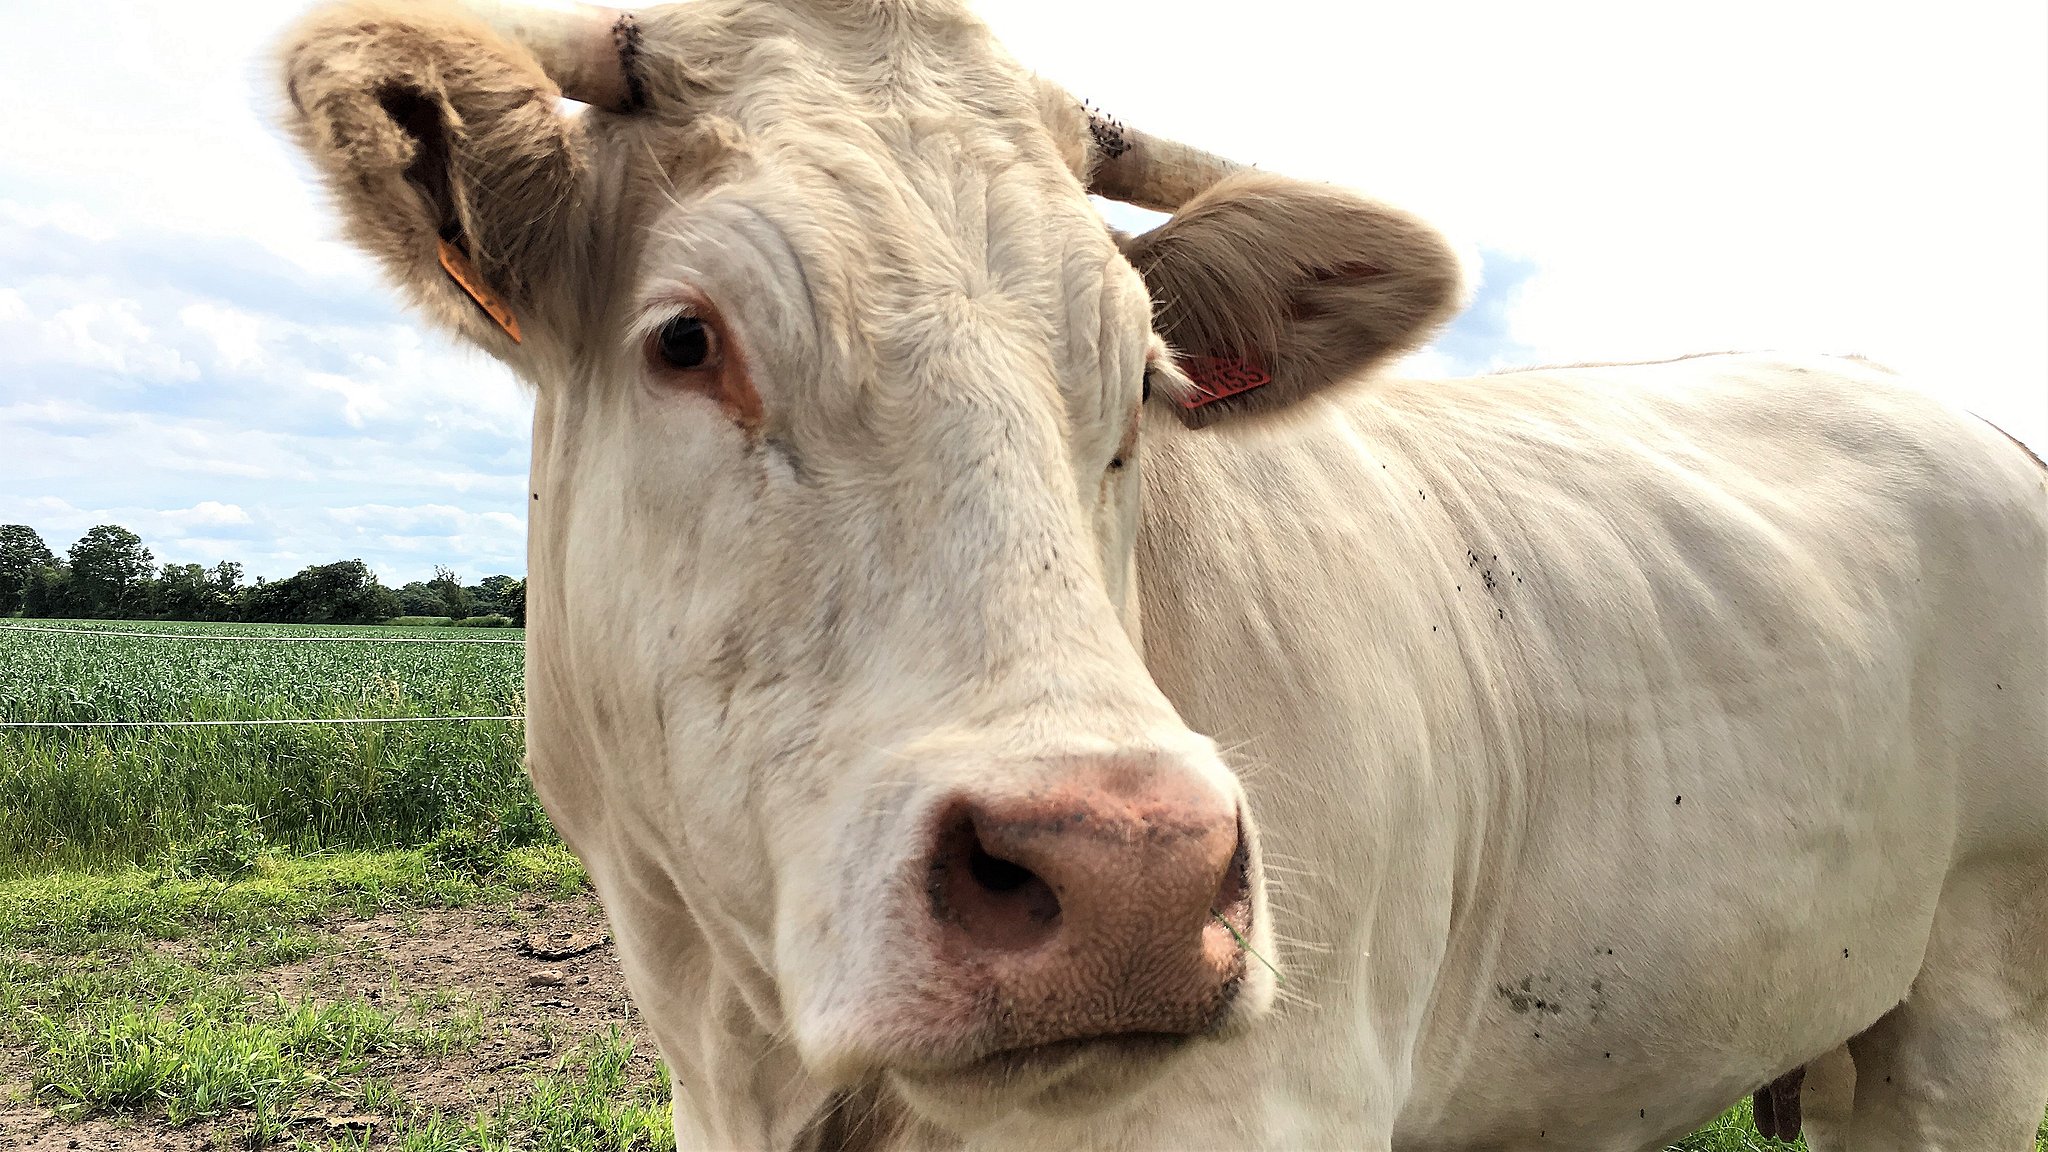 røv: Franskmænd har Judee til verdens smukkeste ko | TV2